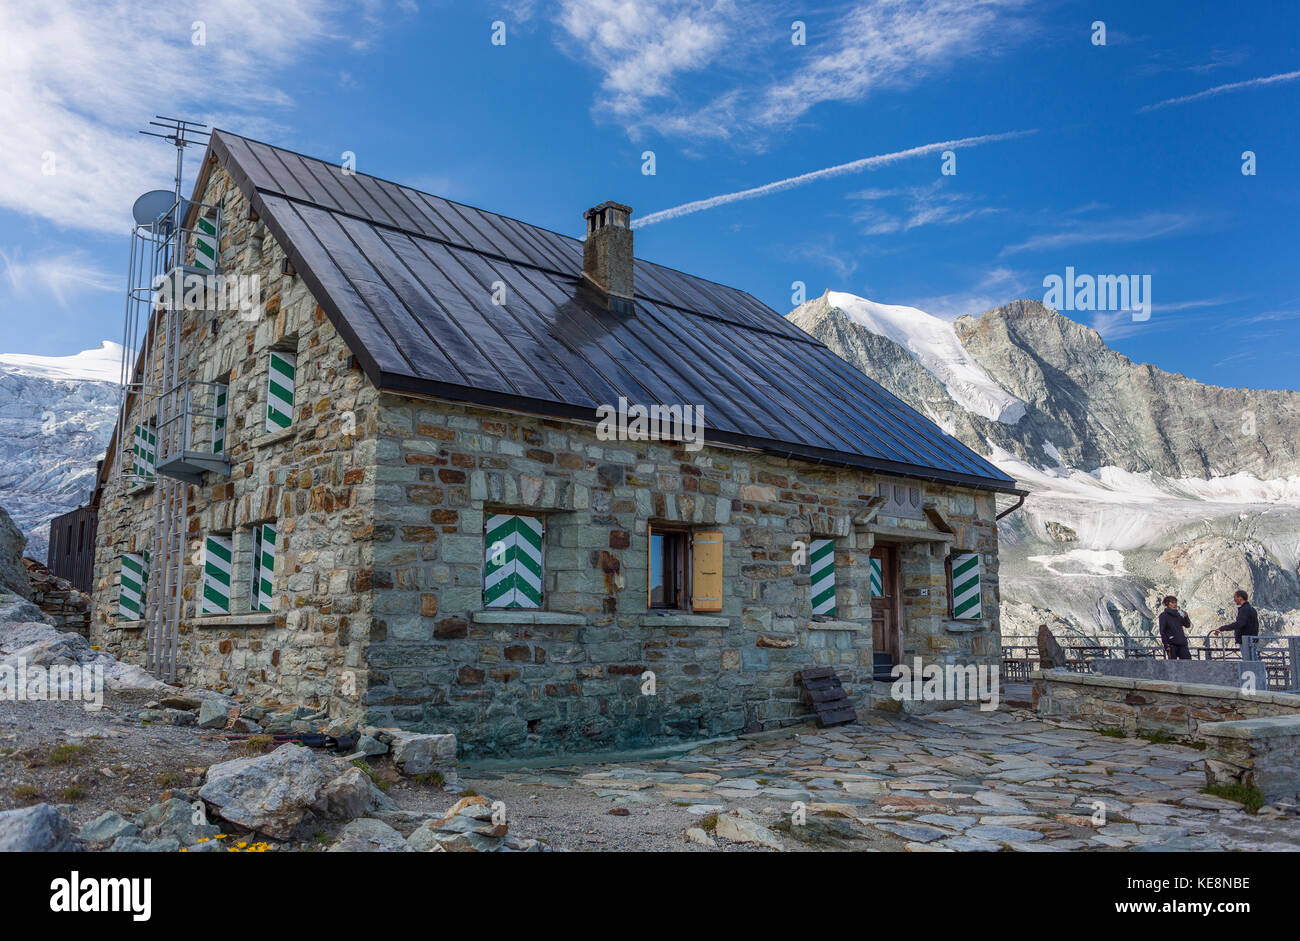 La vallée de Moiry, Suisse - moiry chalet, cabane de Moiry, un refuge de montagne sur le glacier de Moiry, dans les Alpes Pennines dans le canton du Valais. Banque D'Images